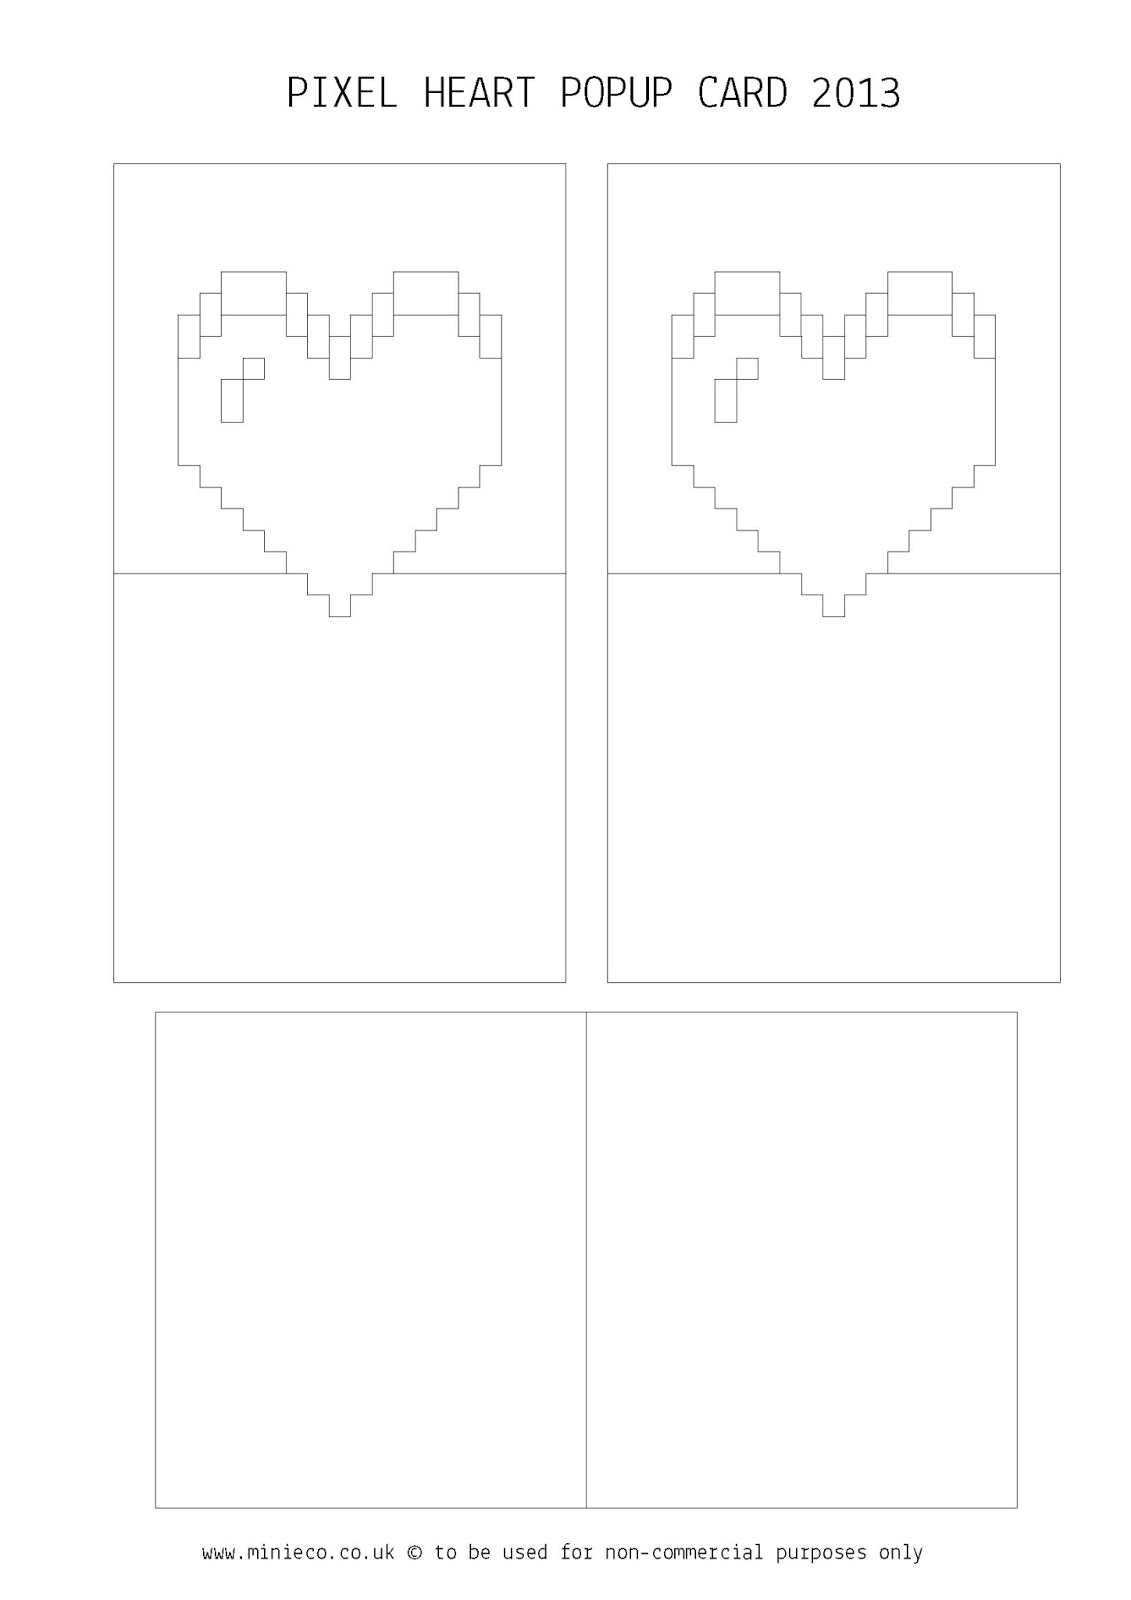 Pixel Heart Pop Up Card Template | Akhbarqatar Pertaining To Pixel Heart Pop Up Card Template